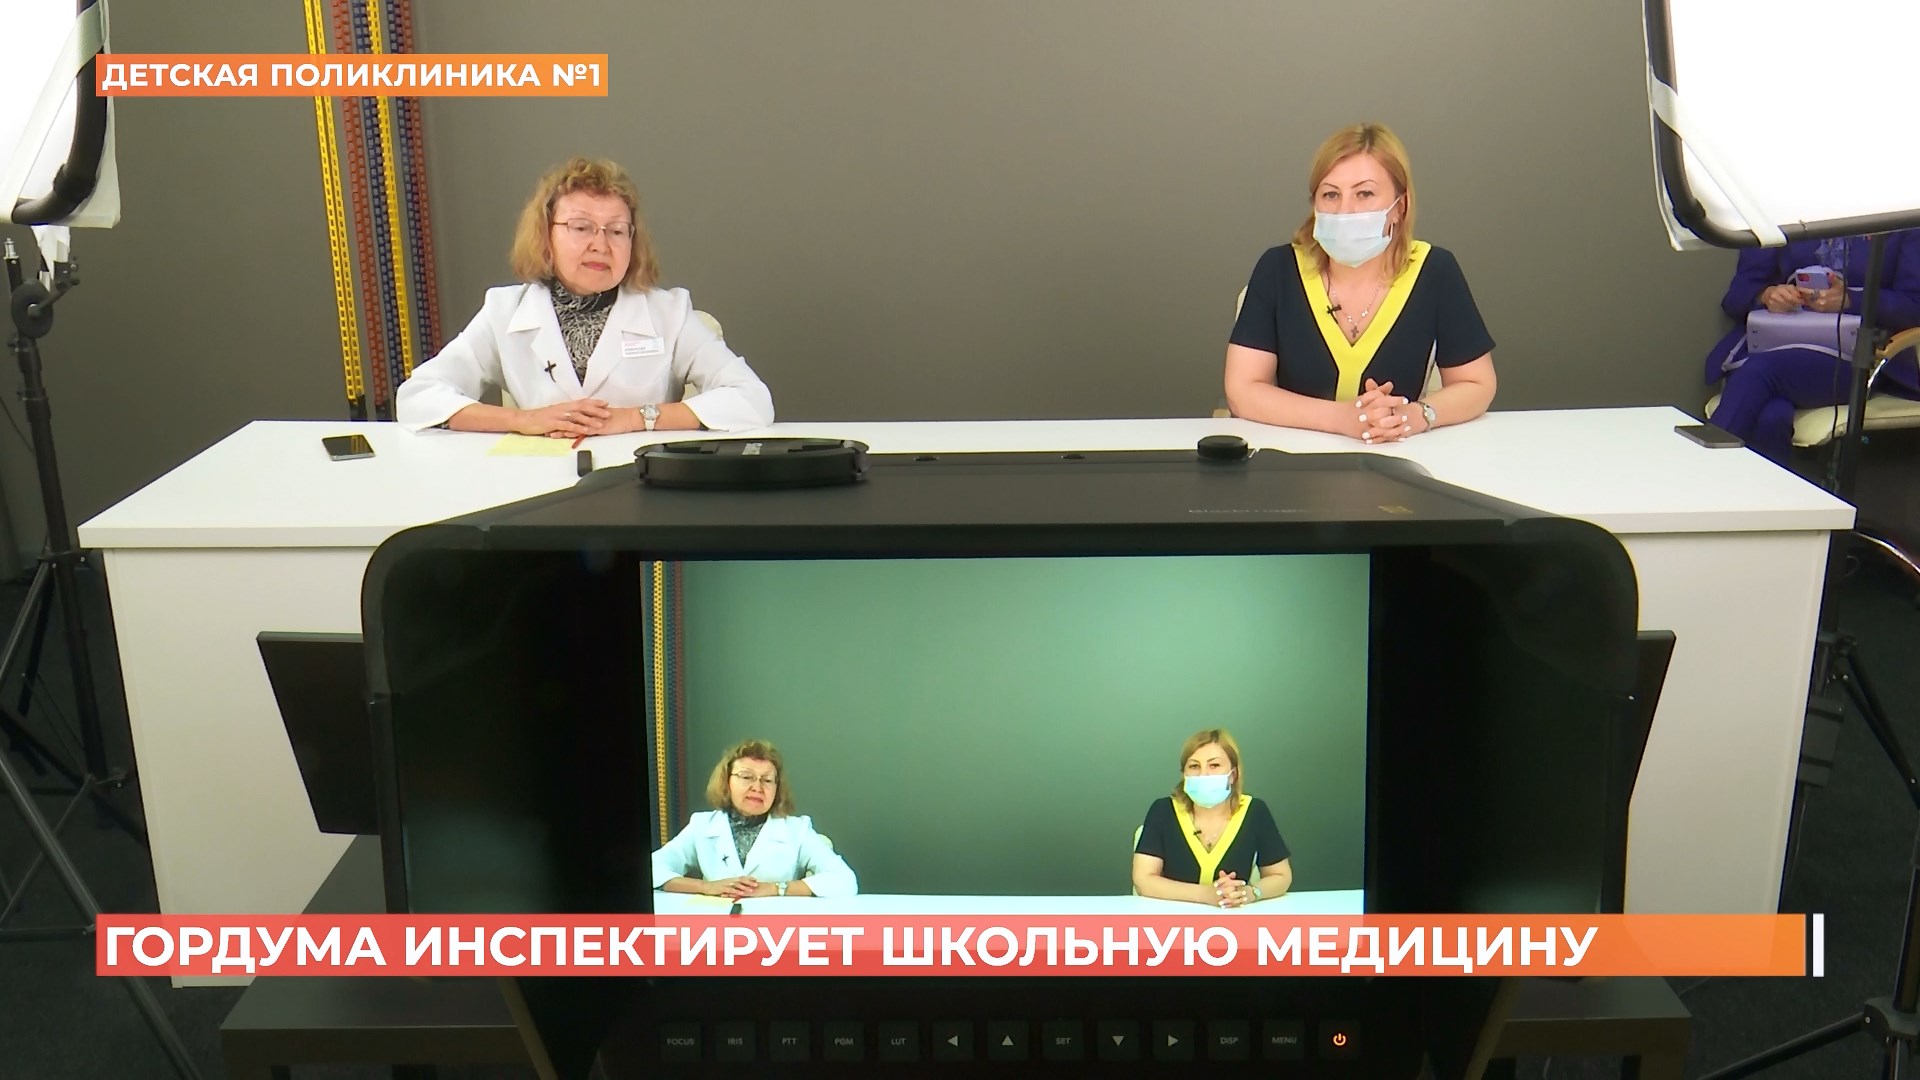 «Школьная медицина» в порядке: депутаты проверили, как в ростовских школах реализуется проект